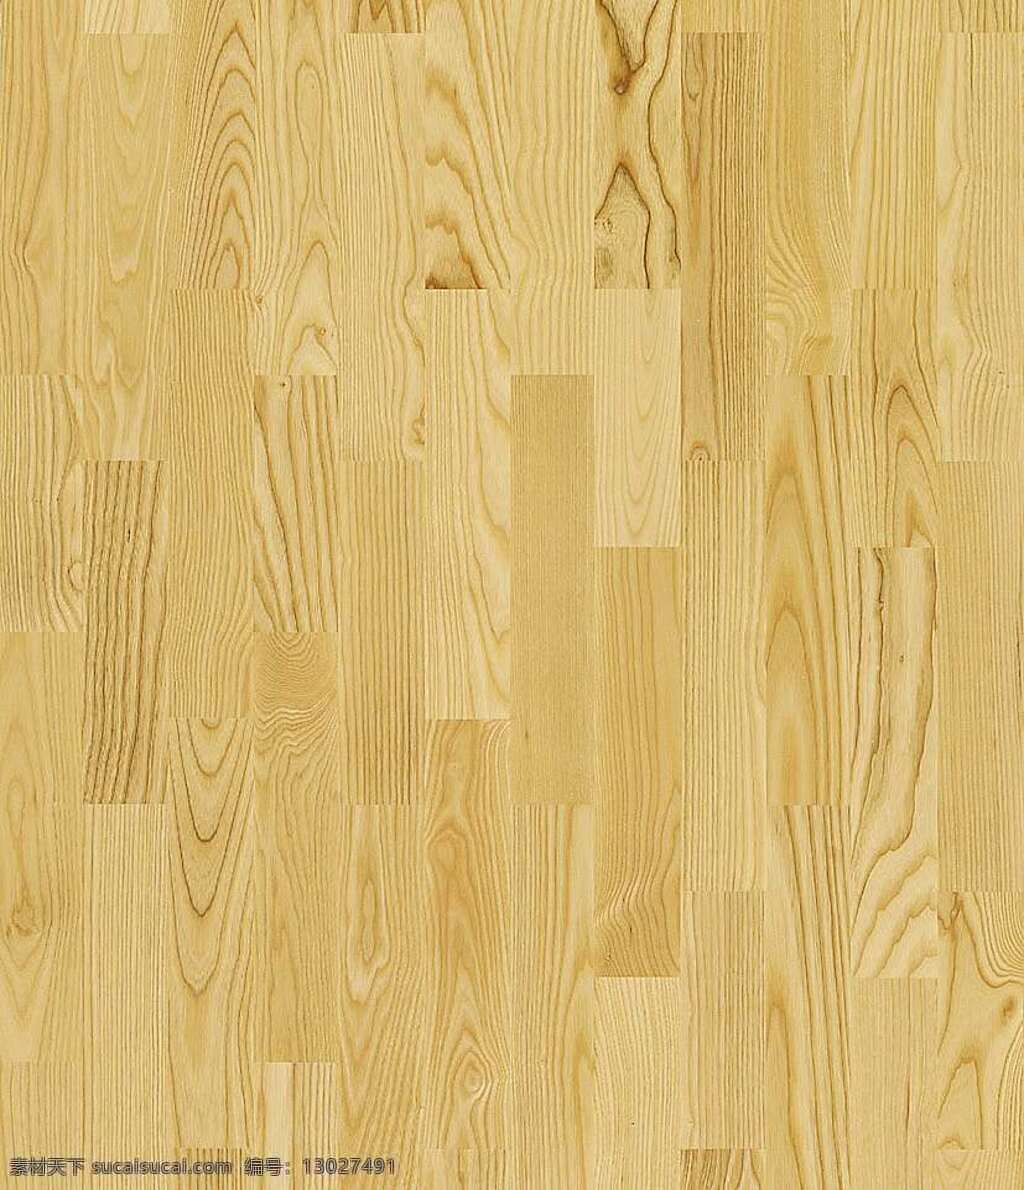 木地板 贴图 室内设计 木材贴图 木地板贴图 木地板效果图 木地板材质 装饰素材 室内装饰用图